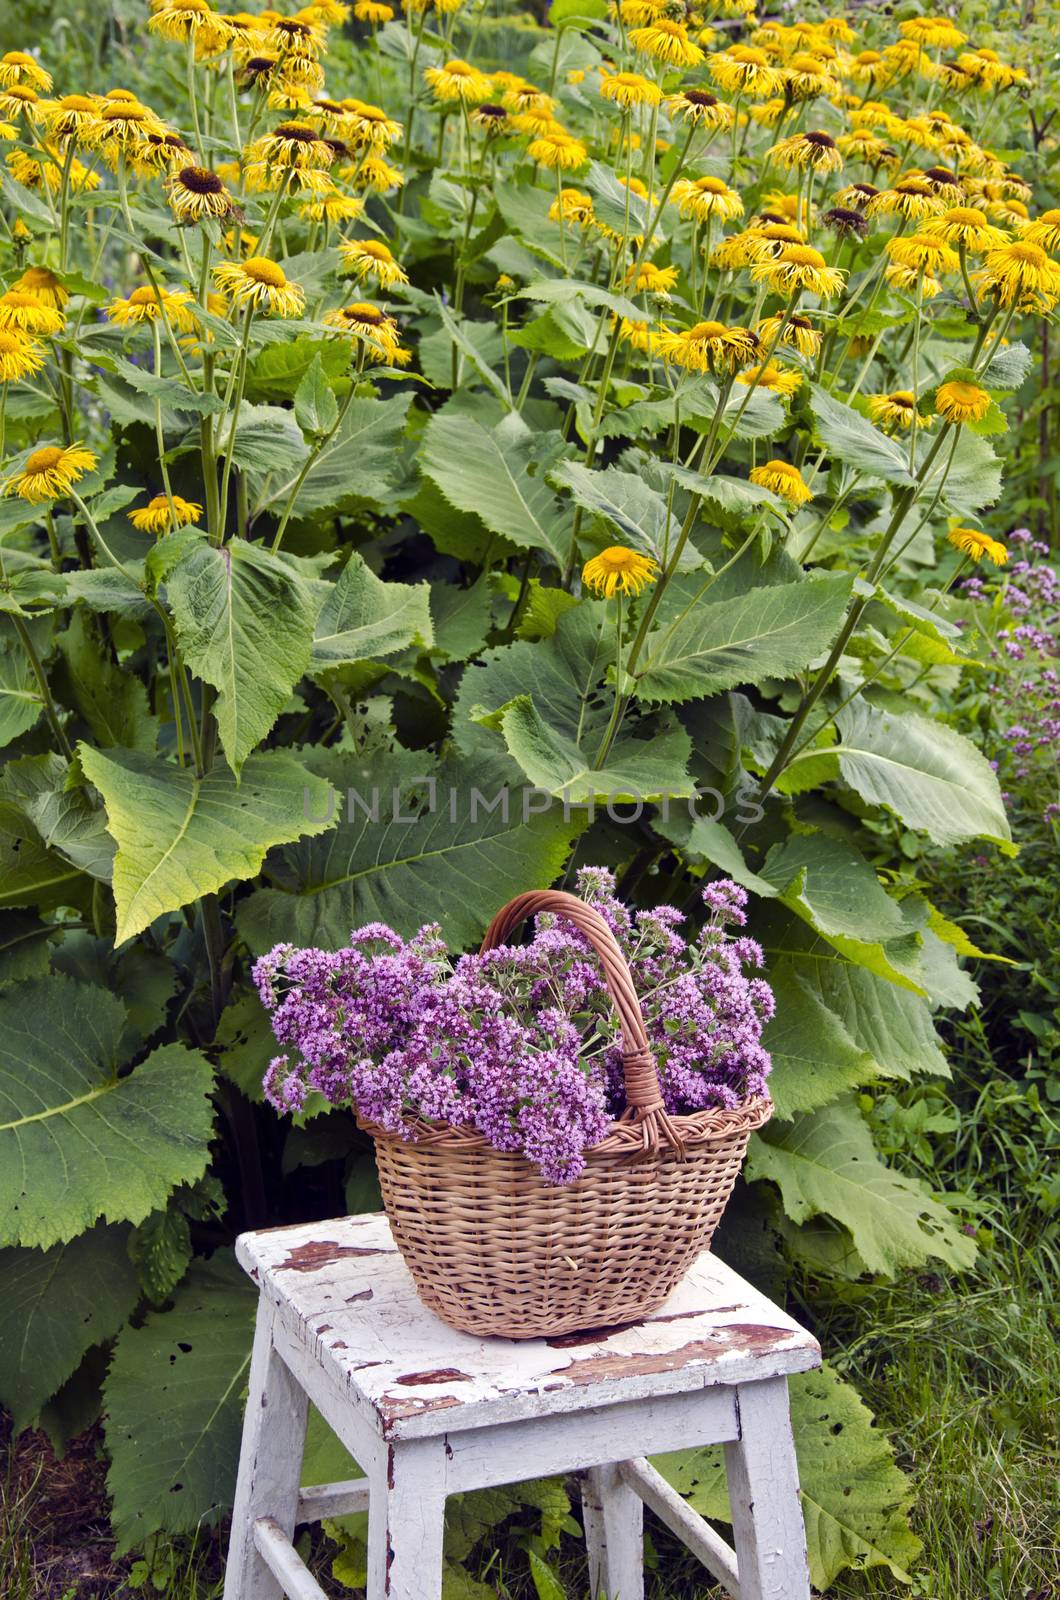 Freshly picked oregano in a wicker basket in the garden by alis_photo